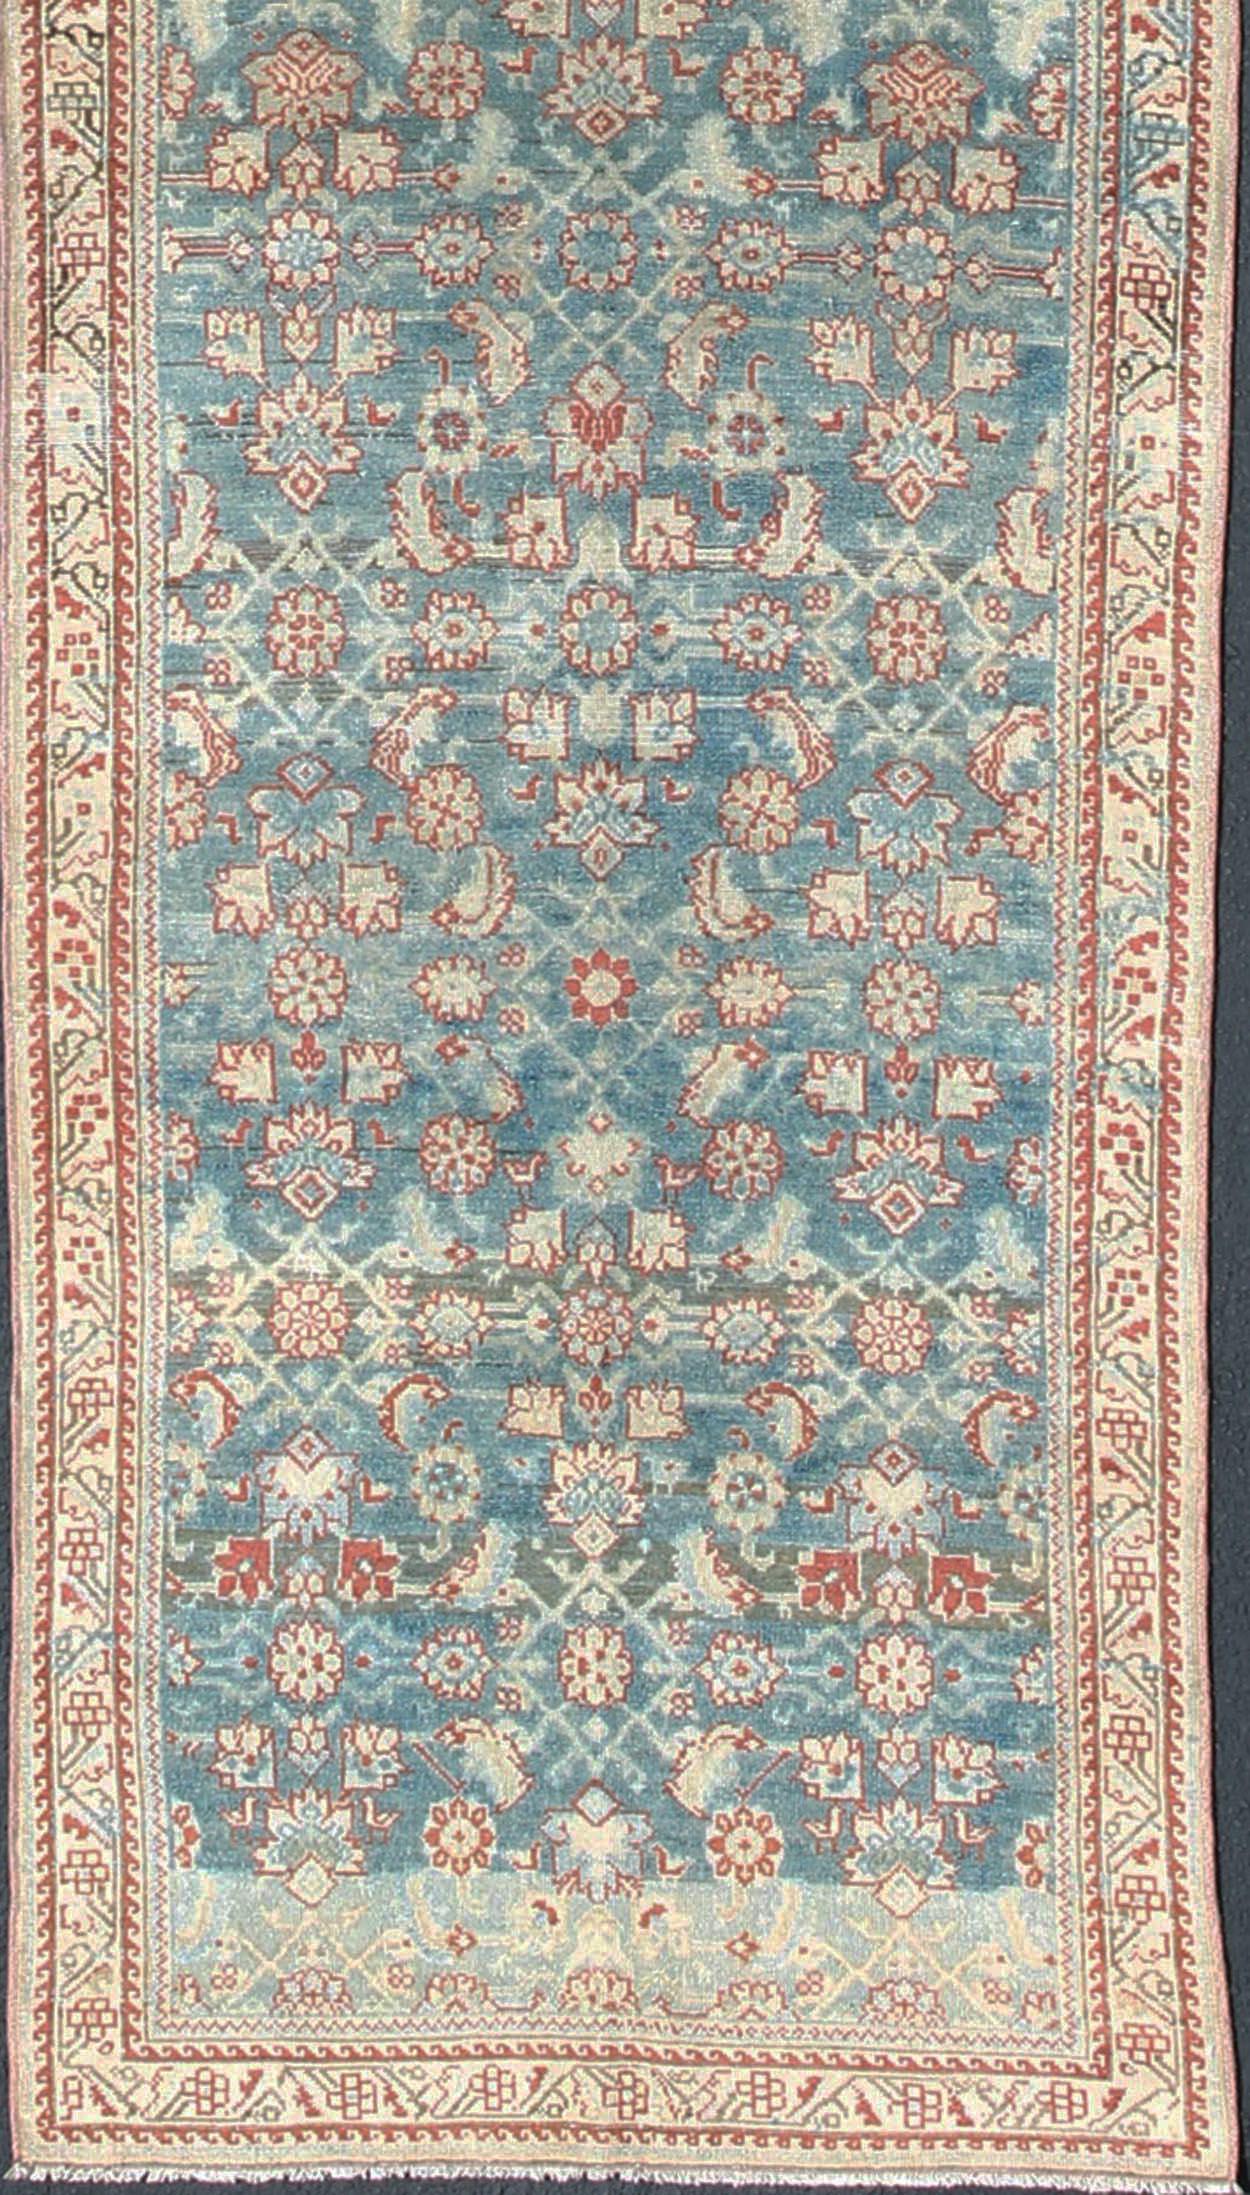 Tapis persan ancien Malayer à motifs floraux dans les tons bleu, rouge et nude, tapis sus-1807-265, pays d'origine / type : Iran / Malayer, circa 1920

Cet ancien tapis persan Malayer, datant du début du 20e siècle, s'appuie sur des détails exquis